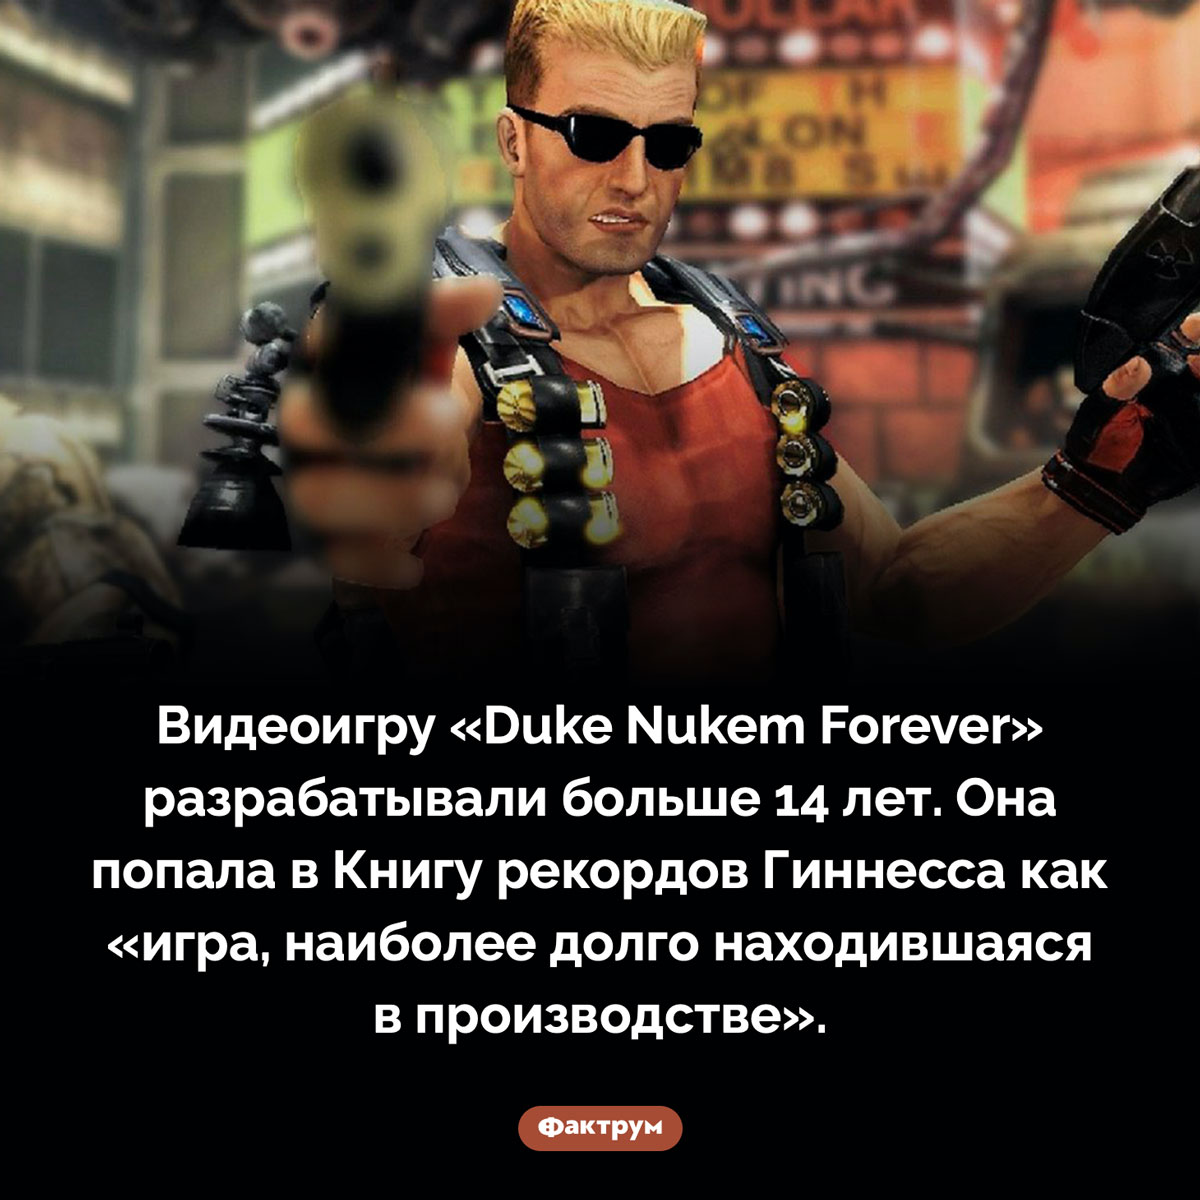 Самая долго разрабатываемая игра. Видеоигру «Duke Nukem Forever» разрабатывали больше 14 лет. Она попала в Книгу рекордов Гиннесса как «игра, наиболее долго находившаяся в производстве».